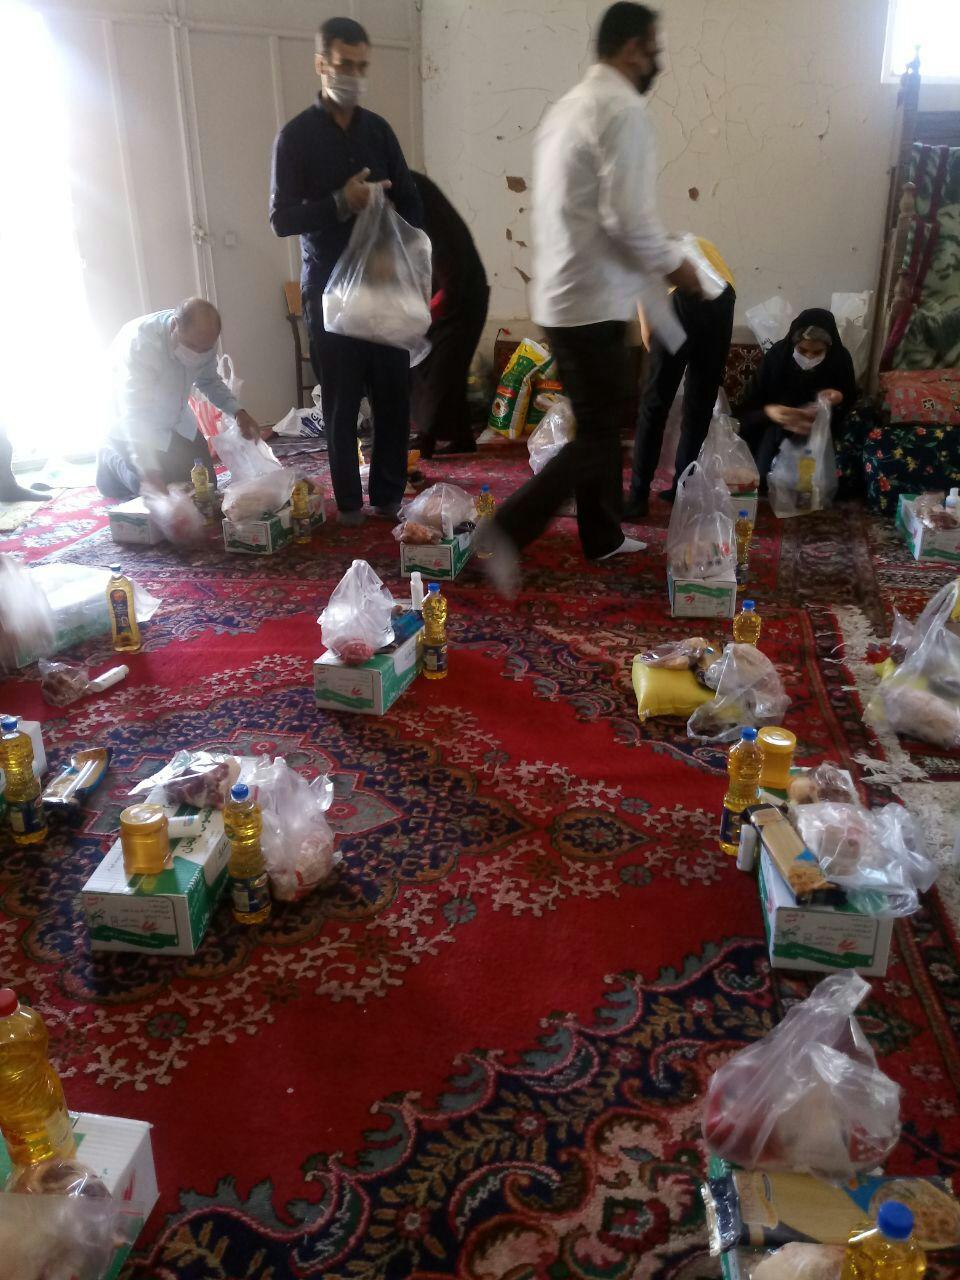 ادامه رزمایش کمک مومنانه در ایجرود/توزیع ۶۰ بسته مواد غذایی و بهداشتی بین نیازمندان بخش حلب